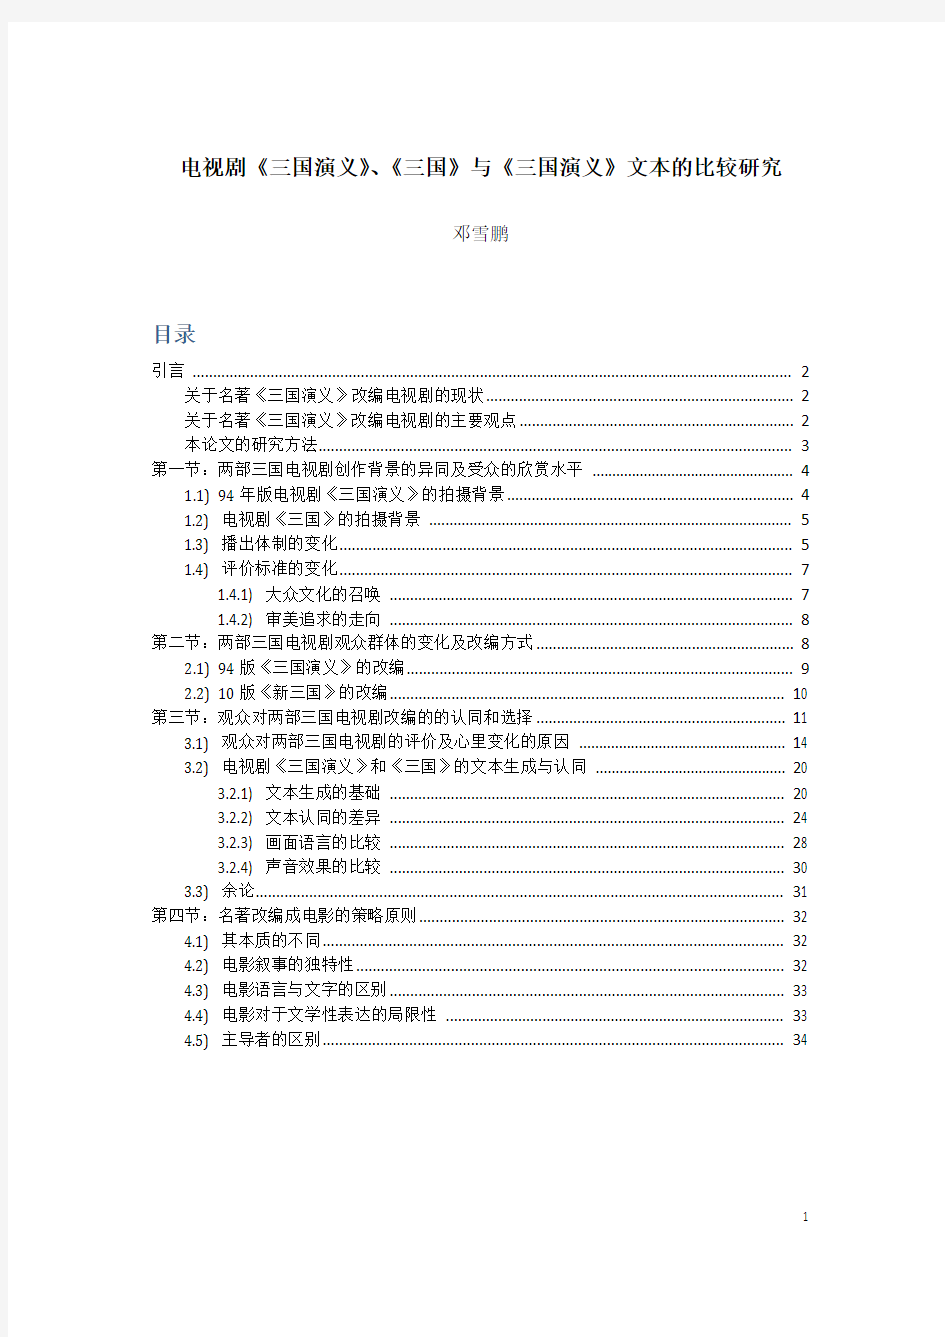 邓雪鹏 - 论电视剧《三国演义》《三国》与文本《三国演义》的比较研究 2015 10 10C